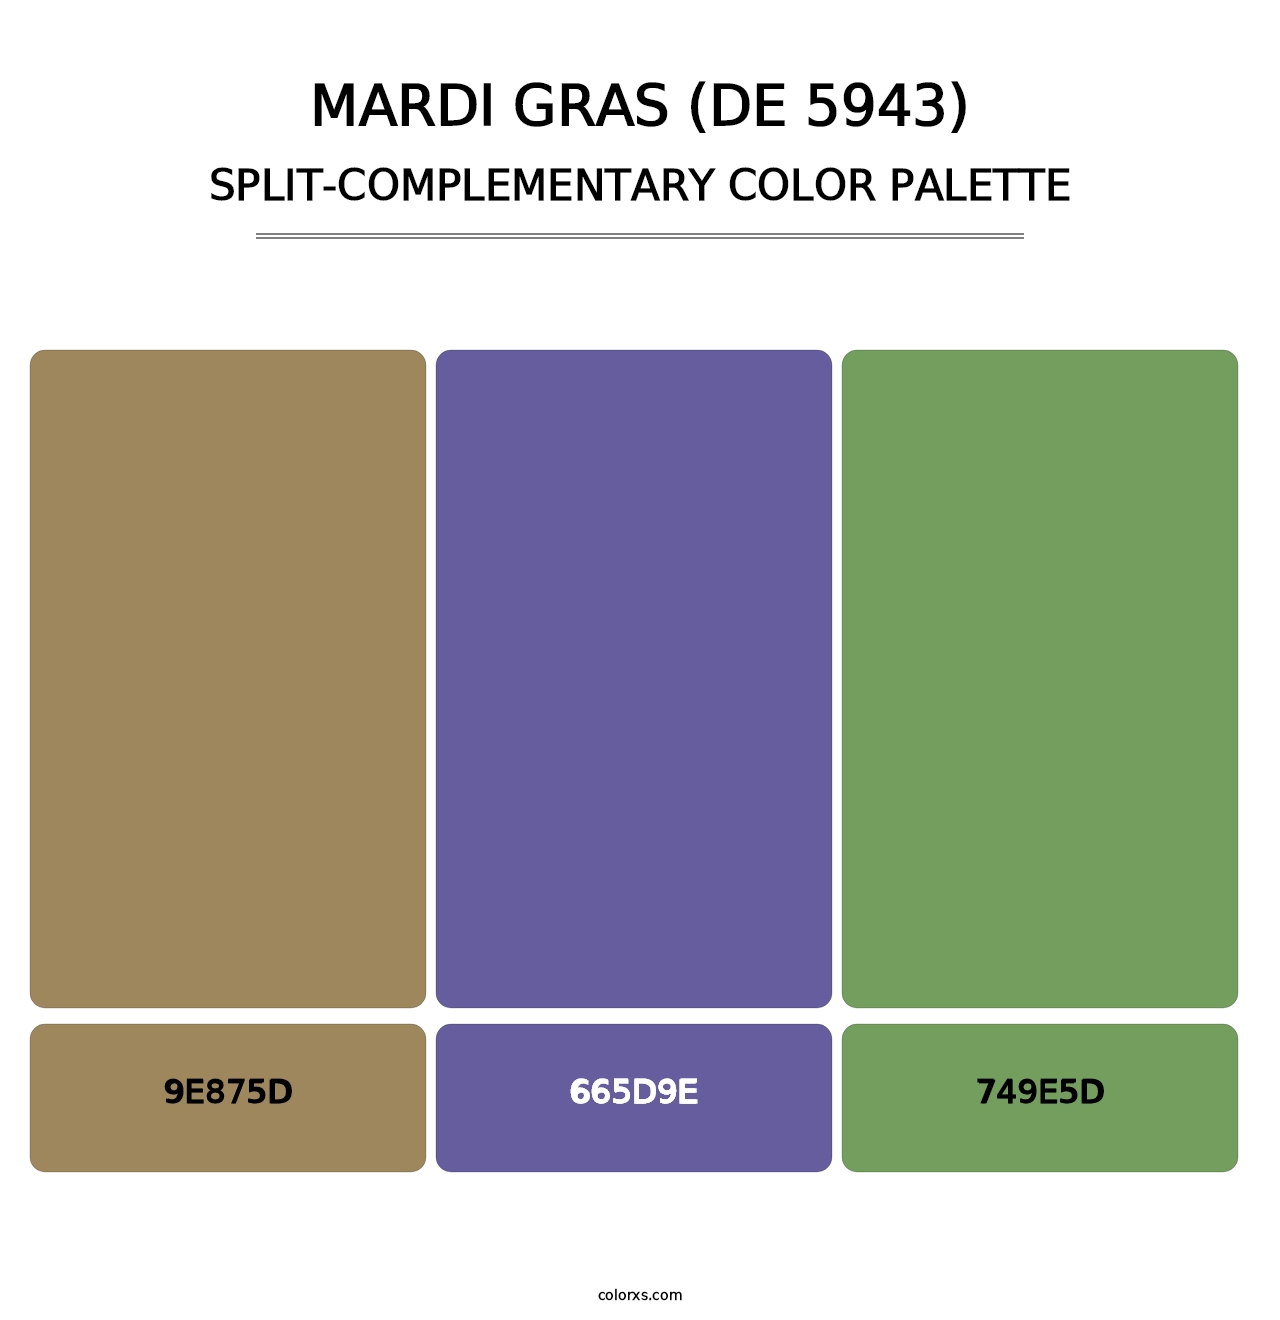 Mardi Gras (DE 5943) - Split-Complementary Color Palette